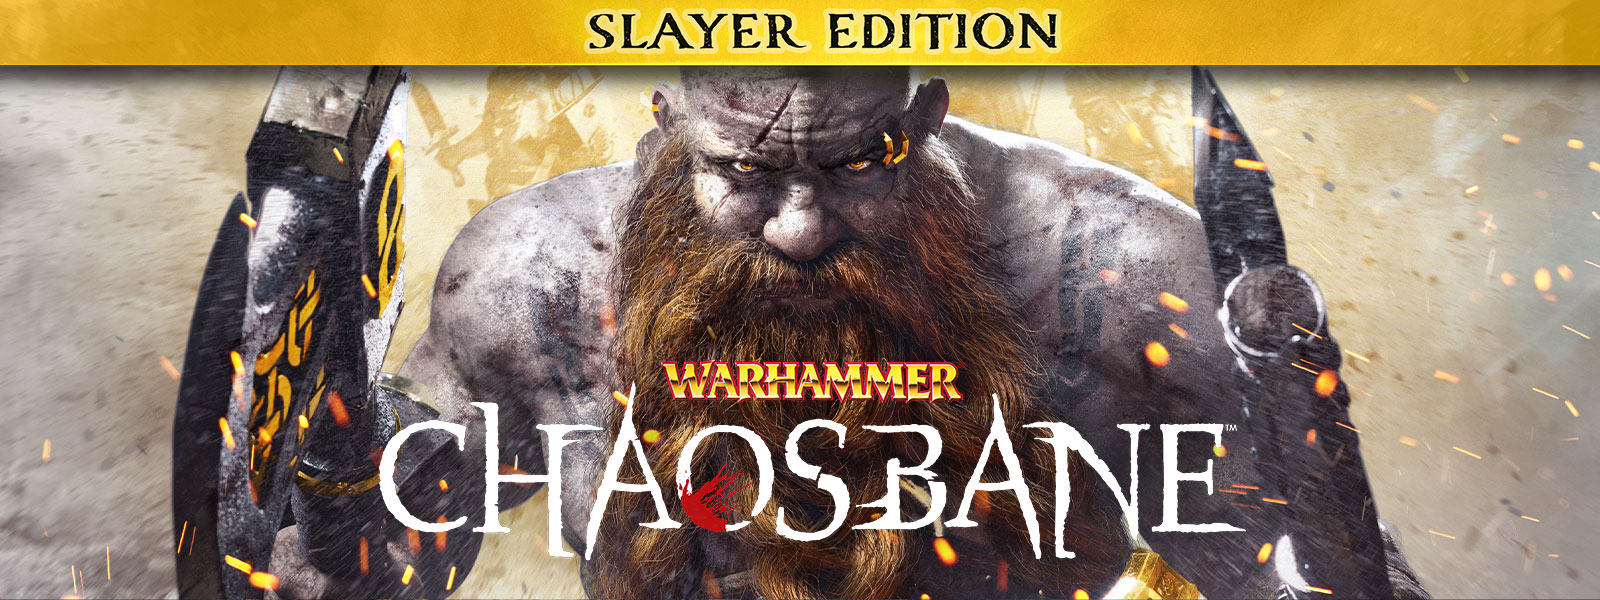 Warhammer: Chaosbane, Slayer Edition, un homme barbu marche à travers des étincelles de flamme, portant une hache dans chaque main.